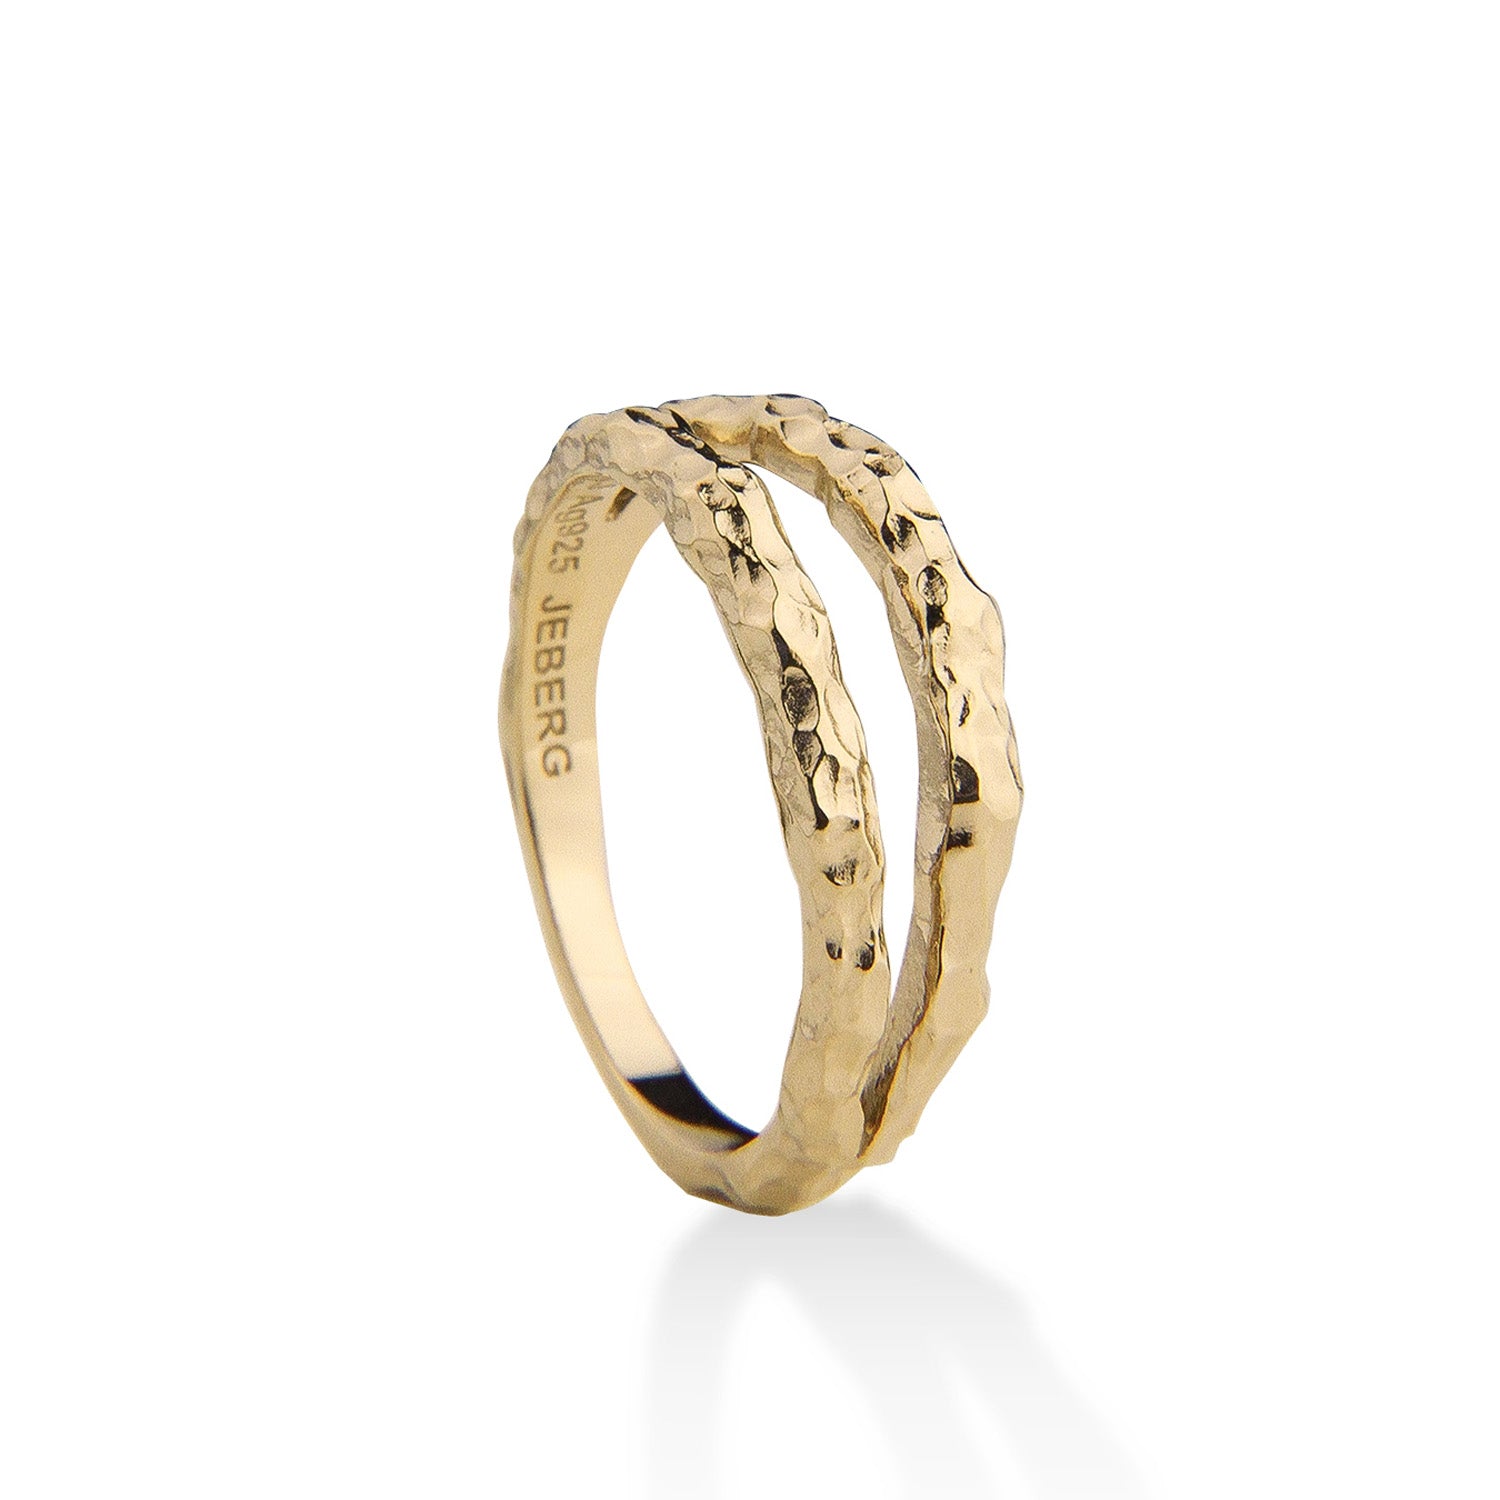 Billede af Jeberg Jewellery - I AM GOLD Double ring Forgyldt sølv sterlingsølv